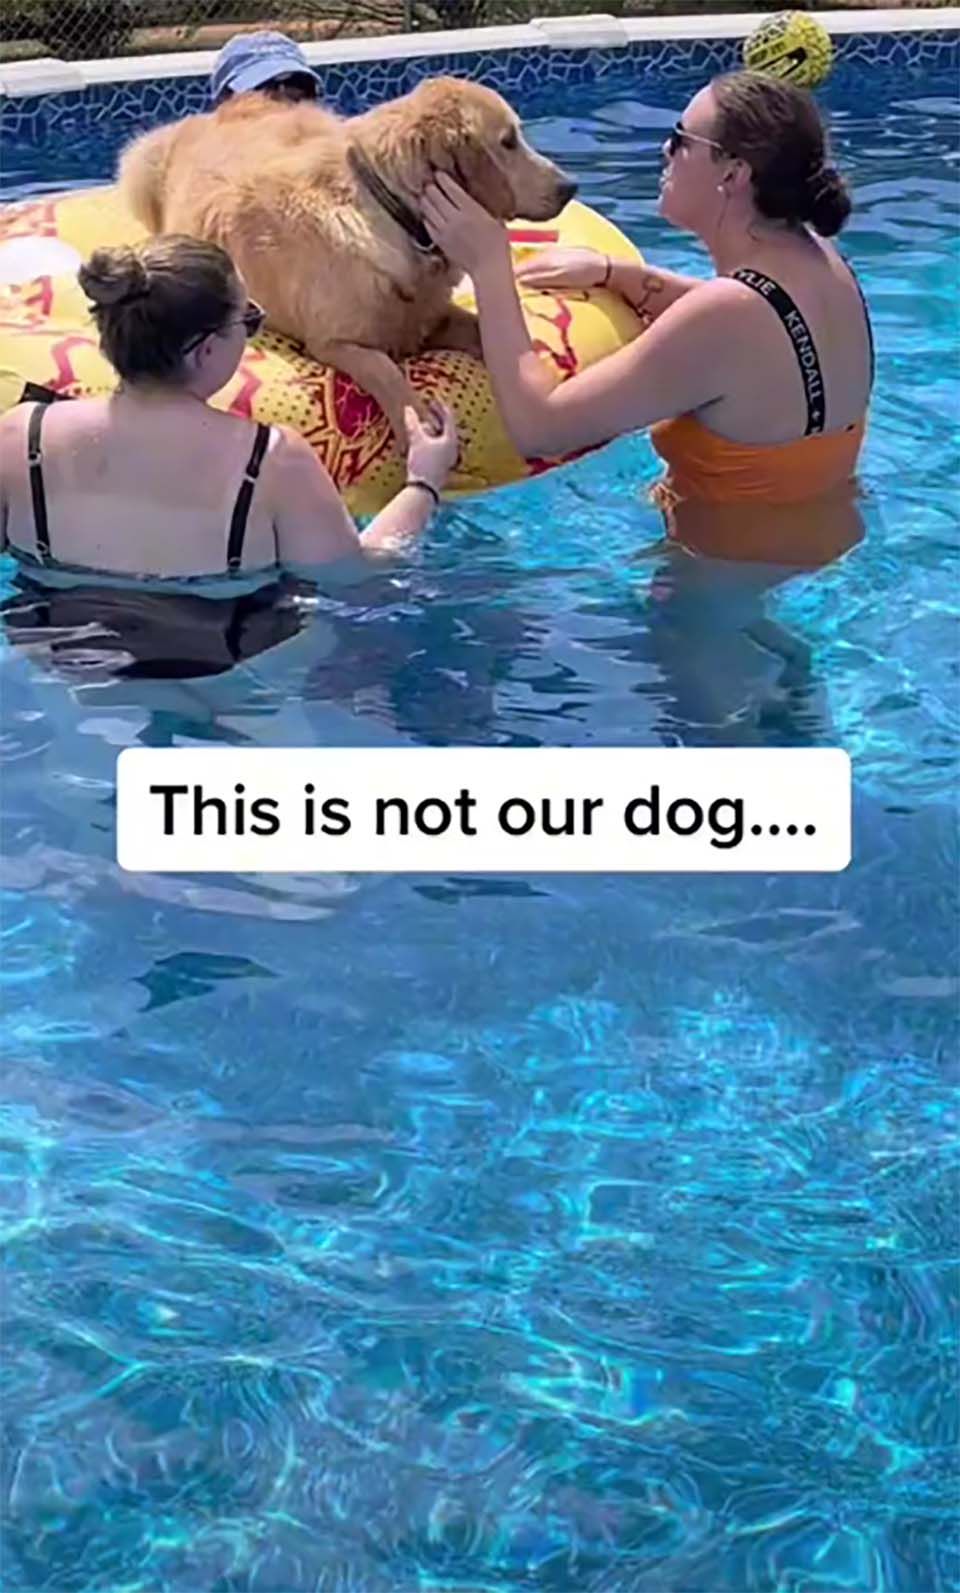 Perros aparecen en una fiesta en la piscina